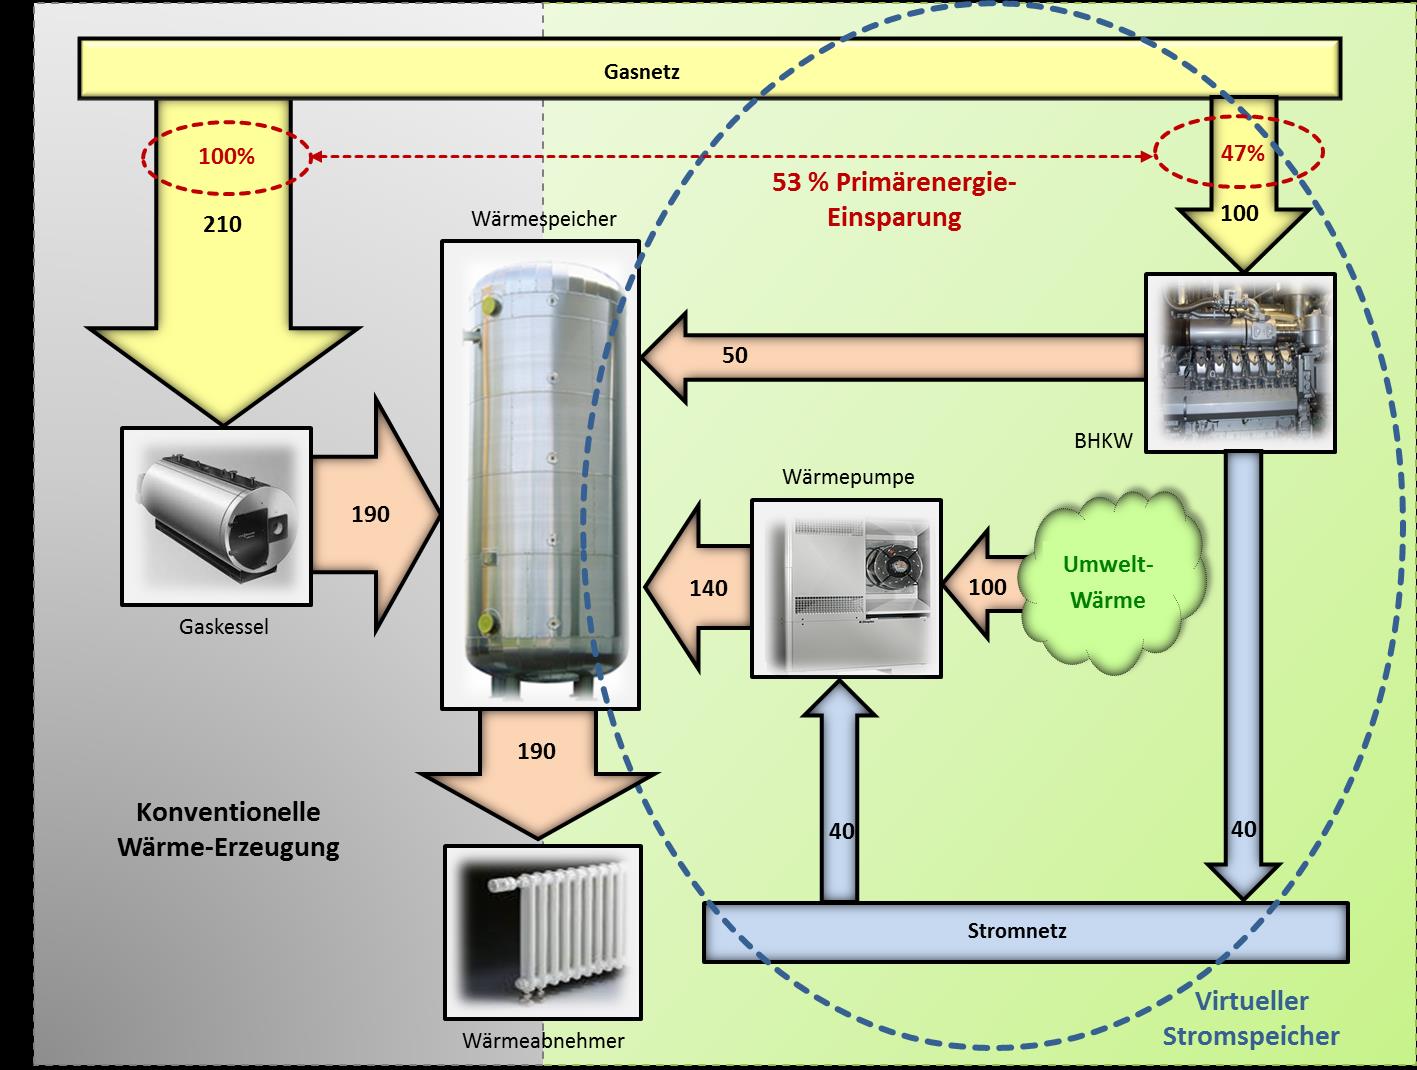 Power-to-Heat Hybride Wärme- Erzeugung mit BHKW und Wärmepumpe im Vergleich zur konventionellen Wärmerzeugung mit Gaskessel